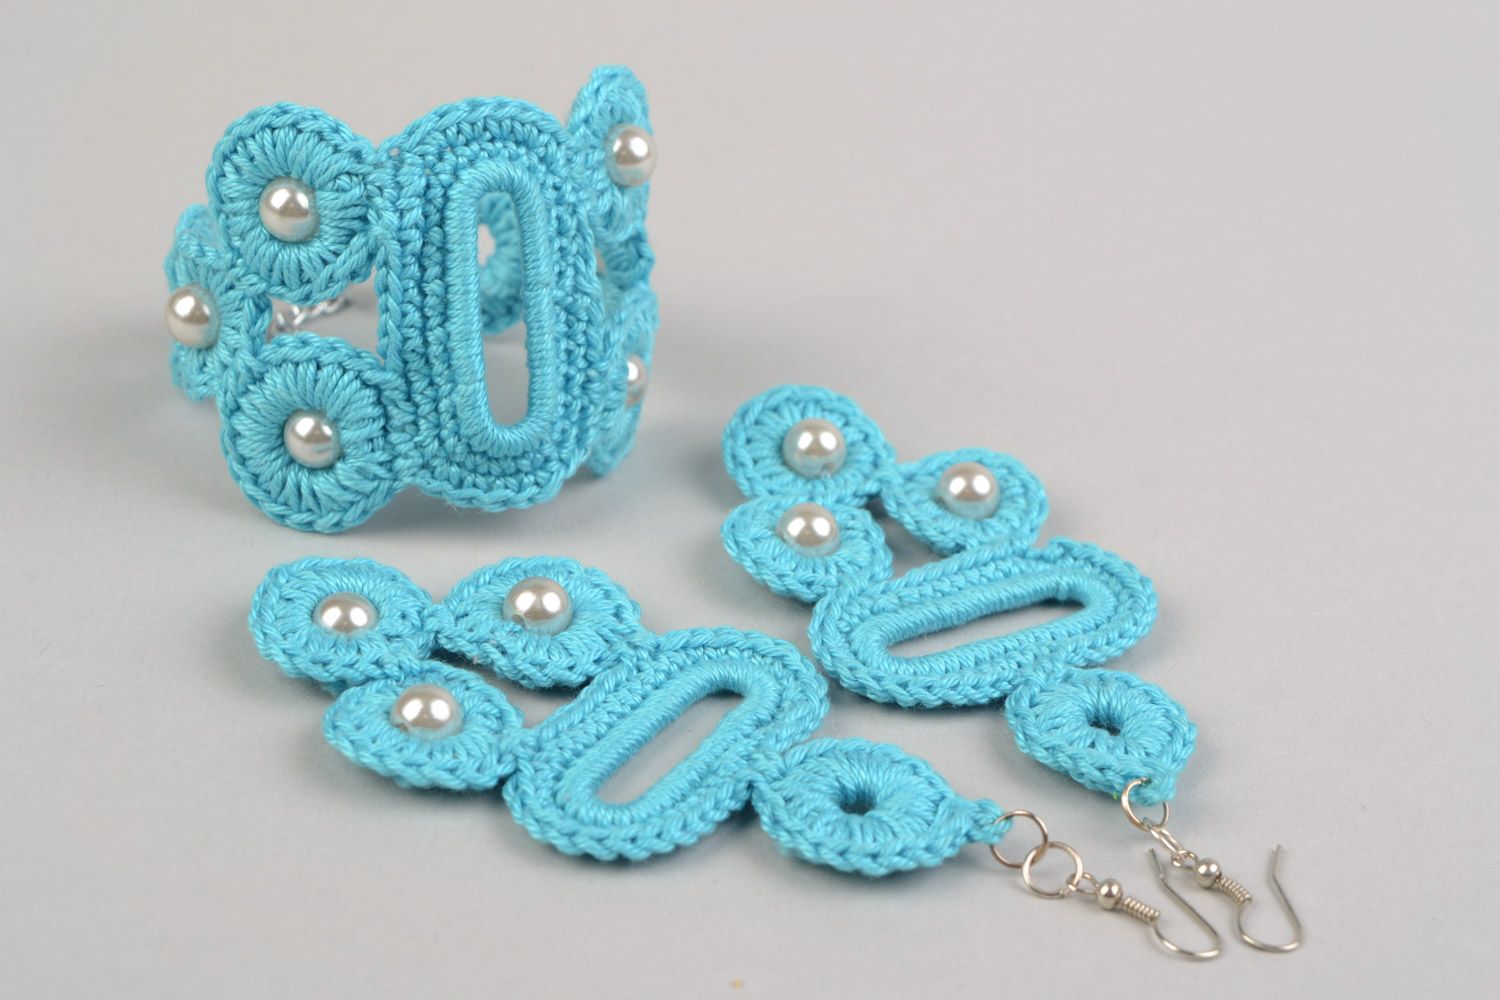 Textil Schmuckset 2 Stück Ohrringe und Armband aus Fäden geflochten in Blau handmade foto 4